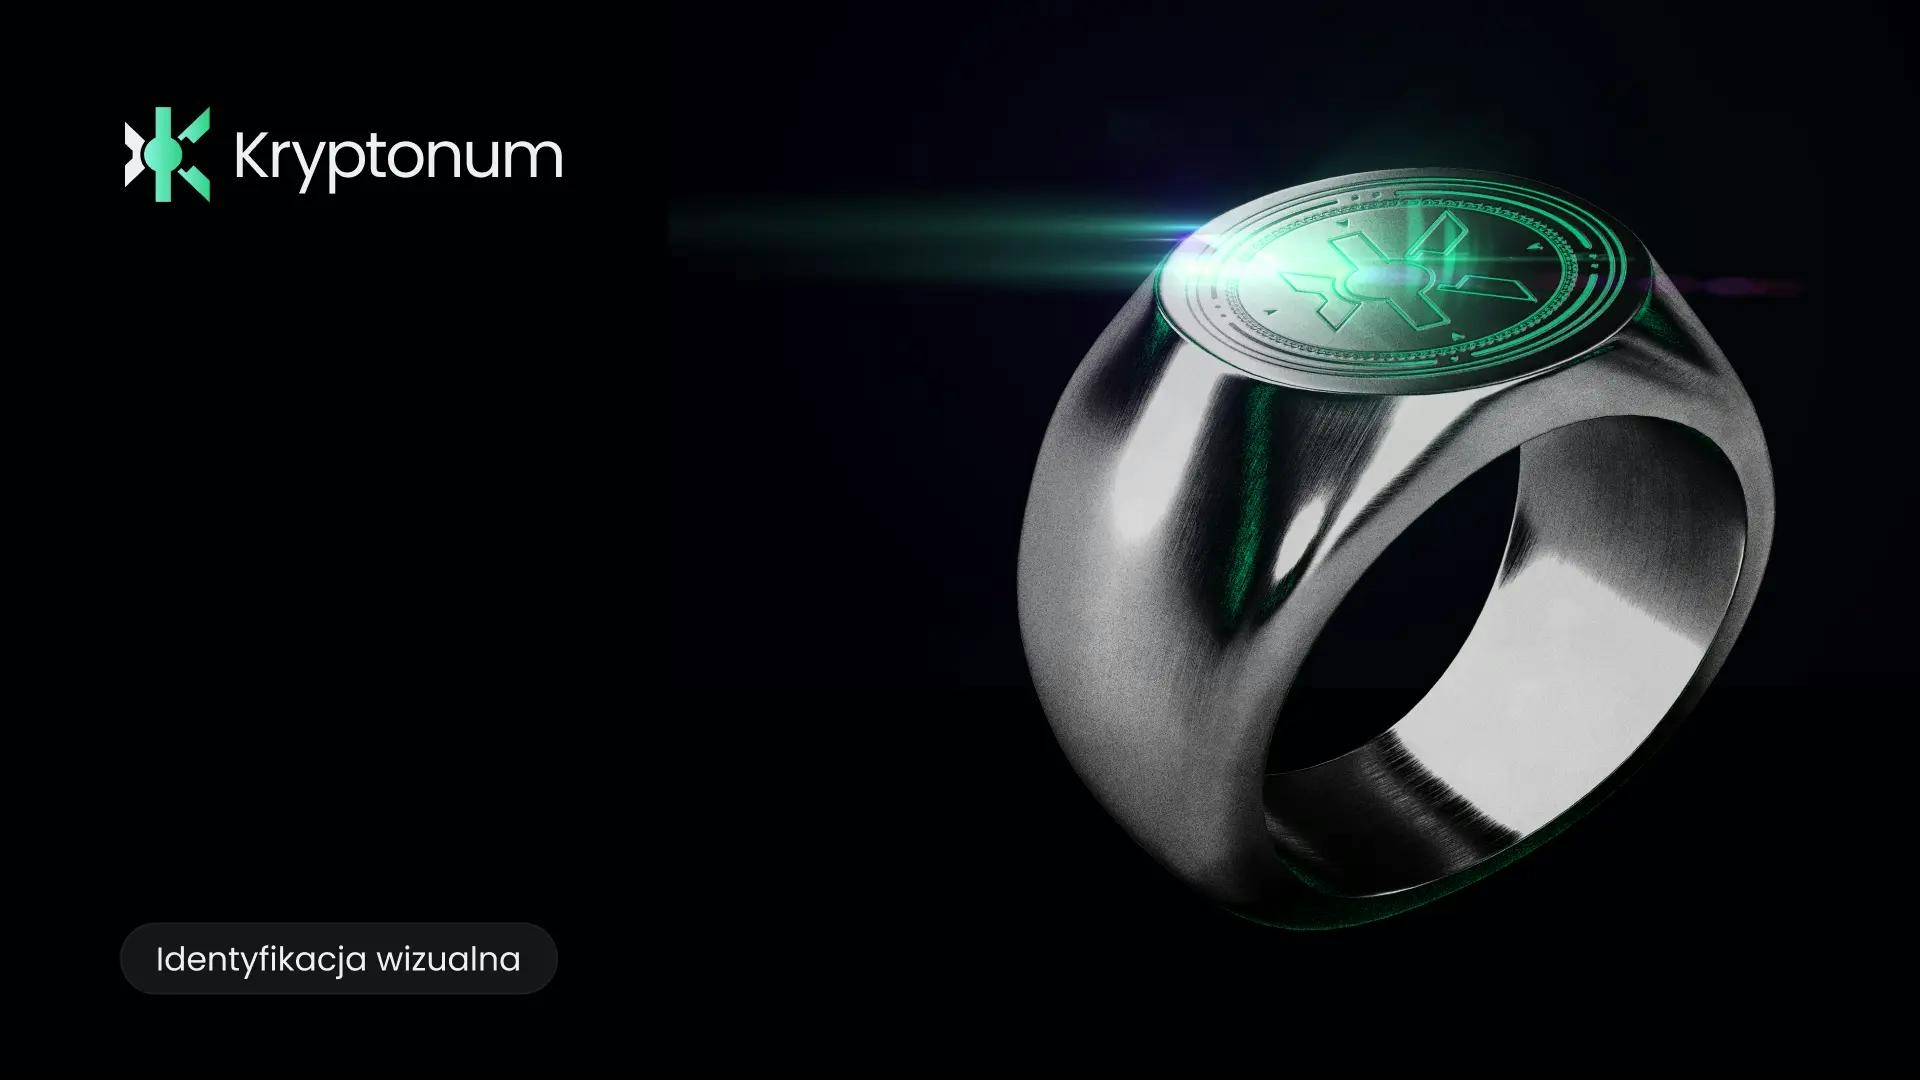 Pierścień z grawerem logo Kryptonum, czyli literą K. Logo błyszczy zielonym światłem i je odbija. Obok pierścienia logo horyzontalne z napisem Kryptonum